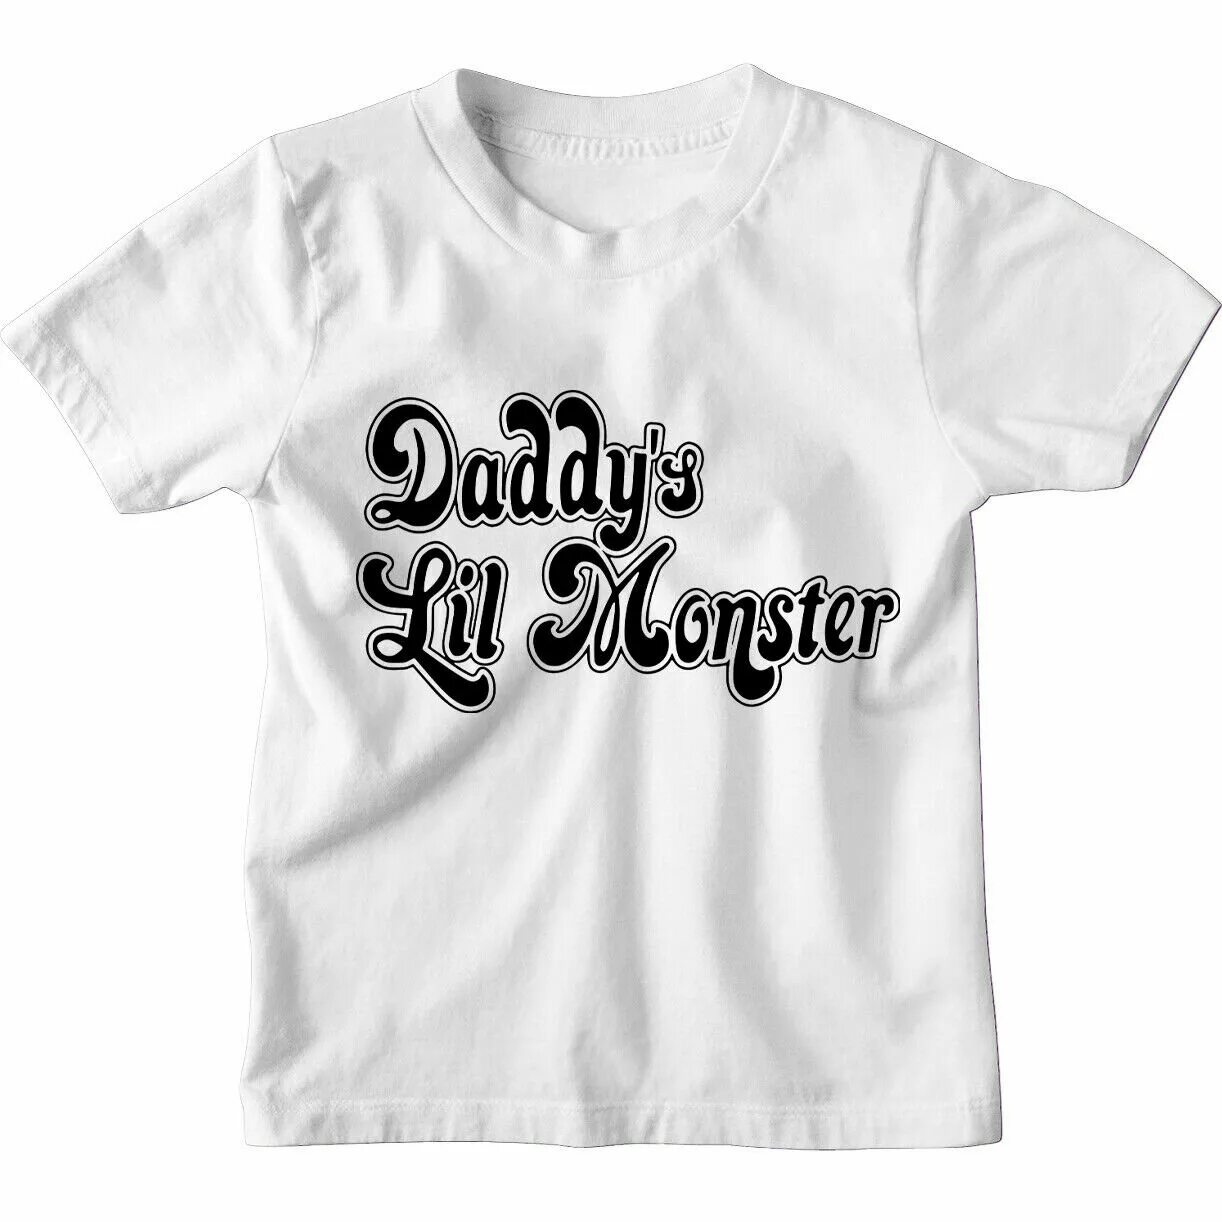 Daddy's lil. Daddy's Lil Monster футболка. Штаны Daddys Lil Monster. Daddy's Lil Angel студия.